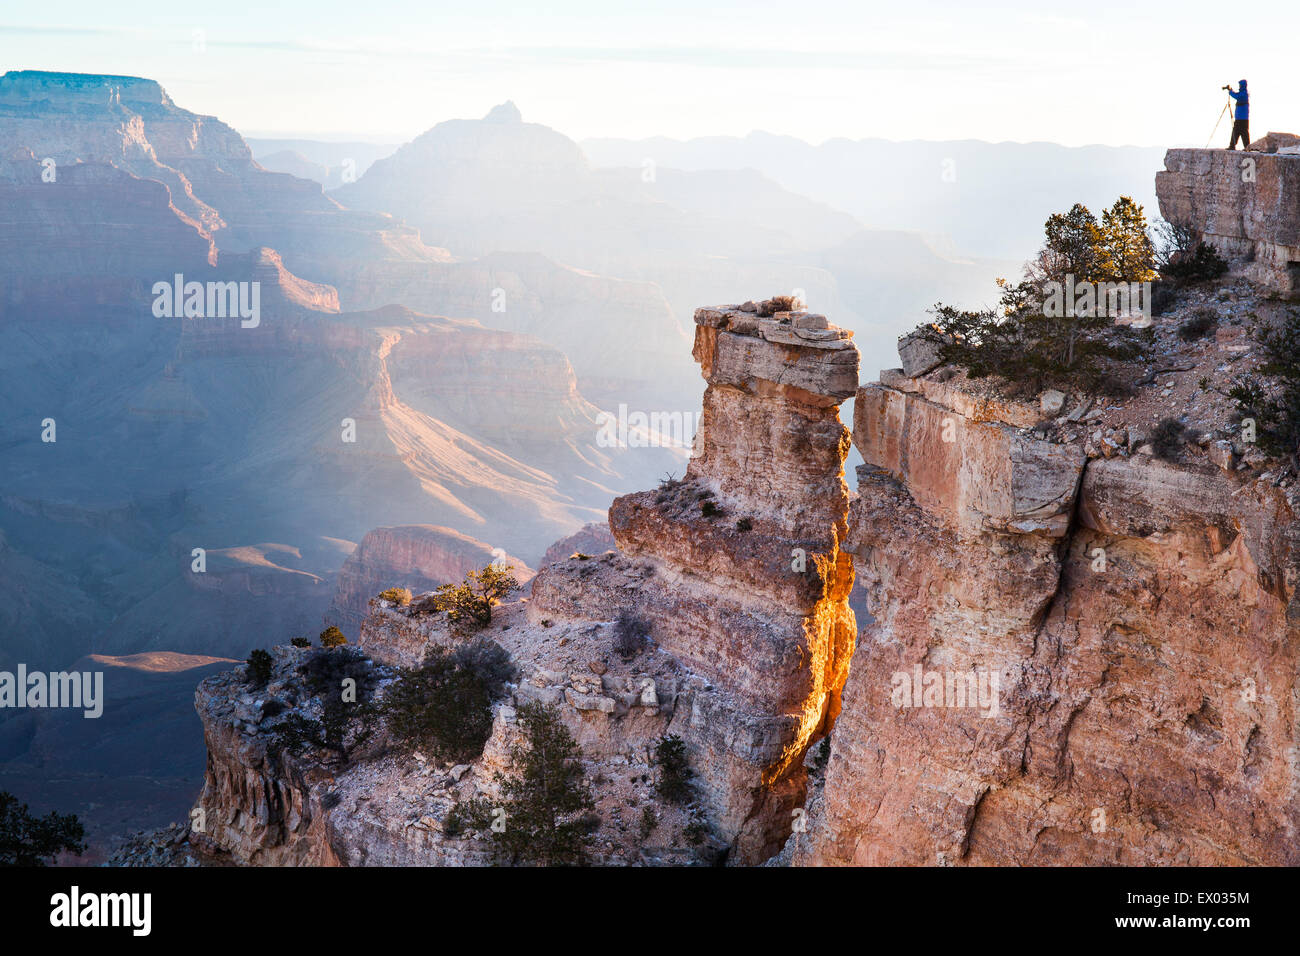 La silhouette lointaine de la femme de prendre des photos de Grand Canyon, Arizona, USA Banque D'Images